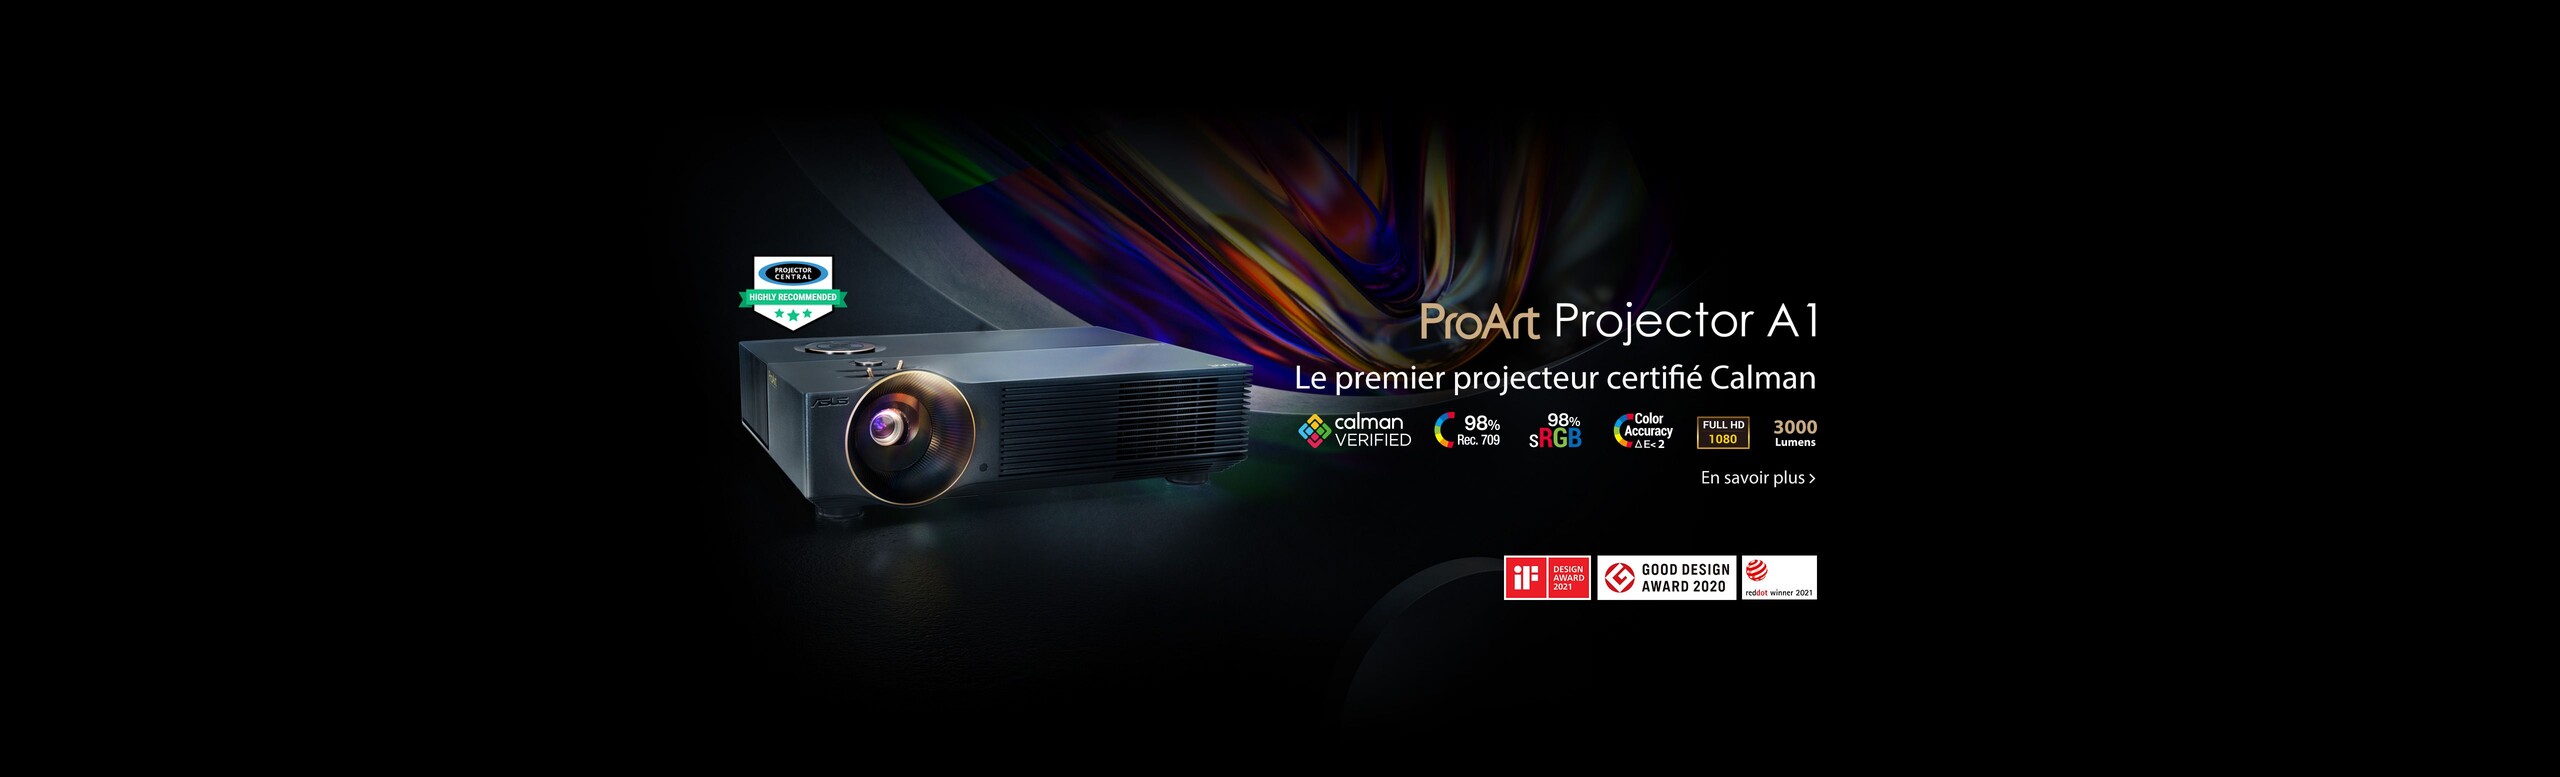 ProArt Projector A1